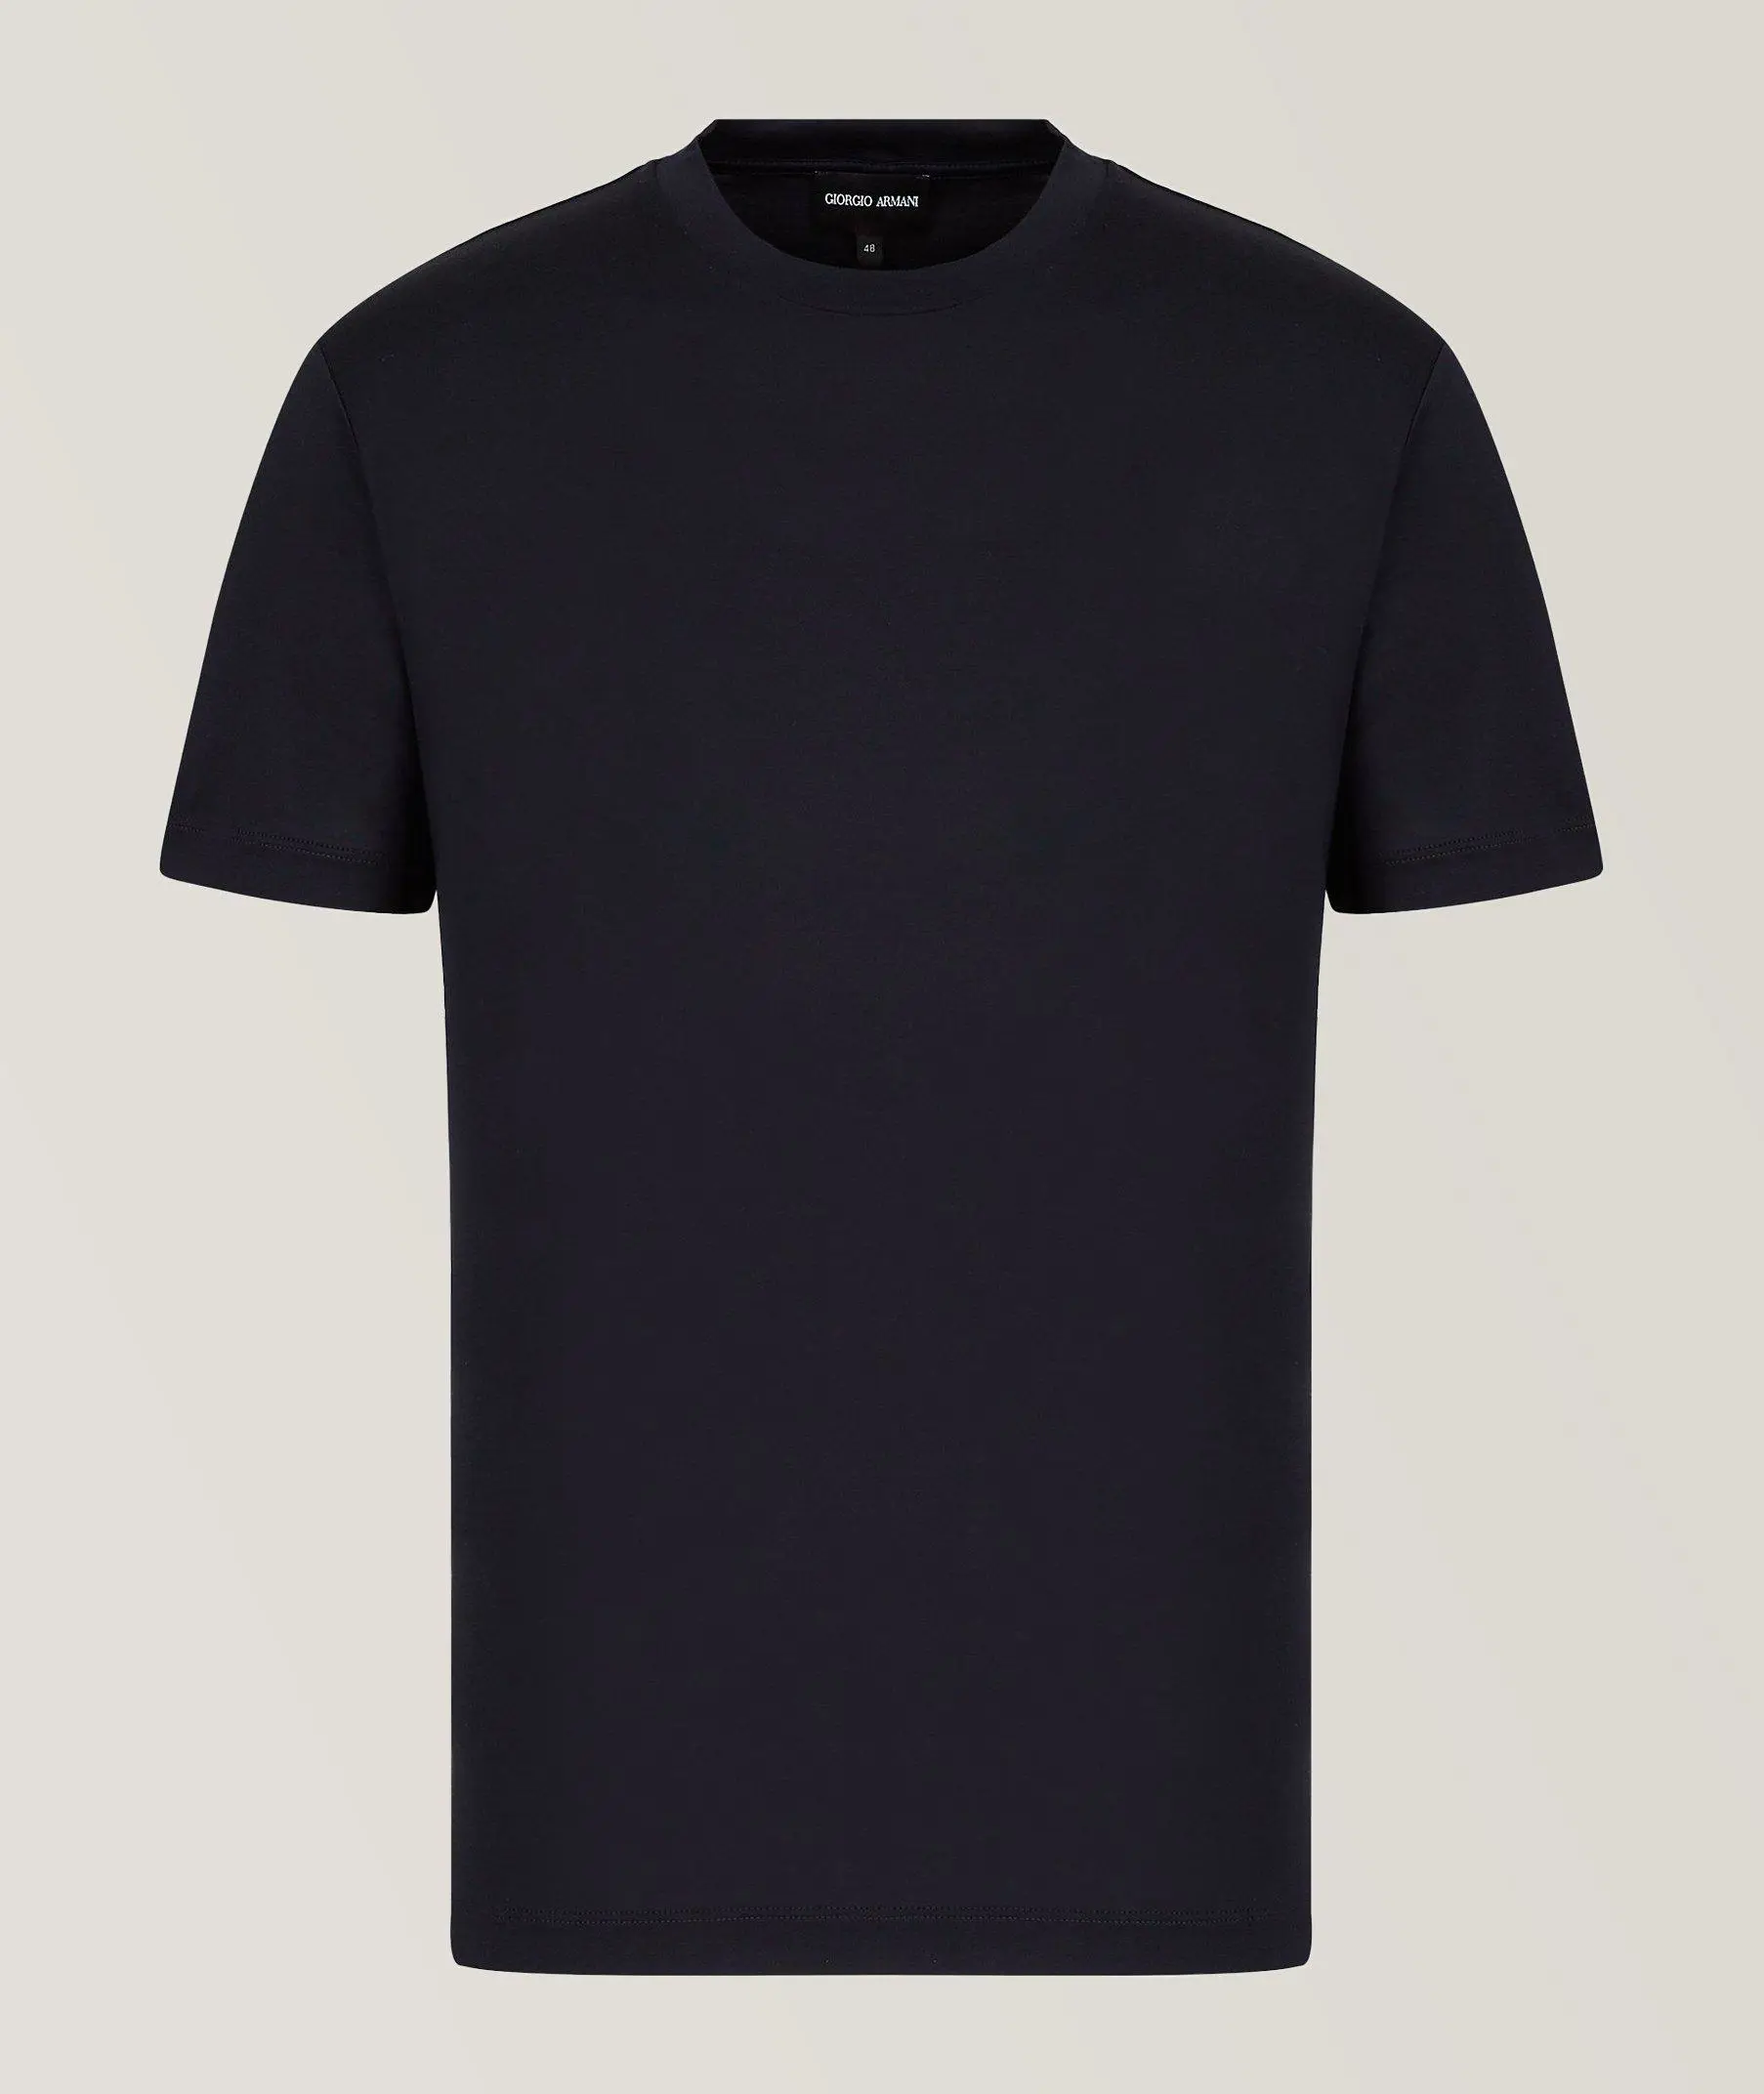 Harry Rosen Knit Jersey Silk-Cotton T-Shirt. 1